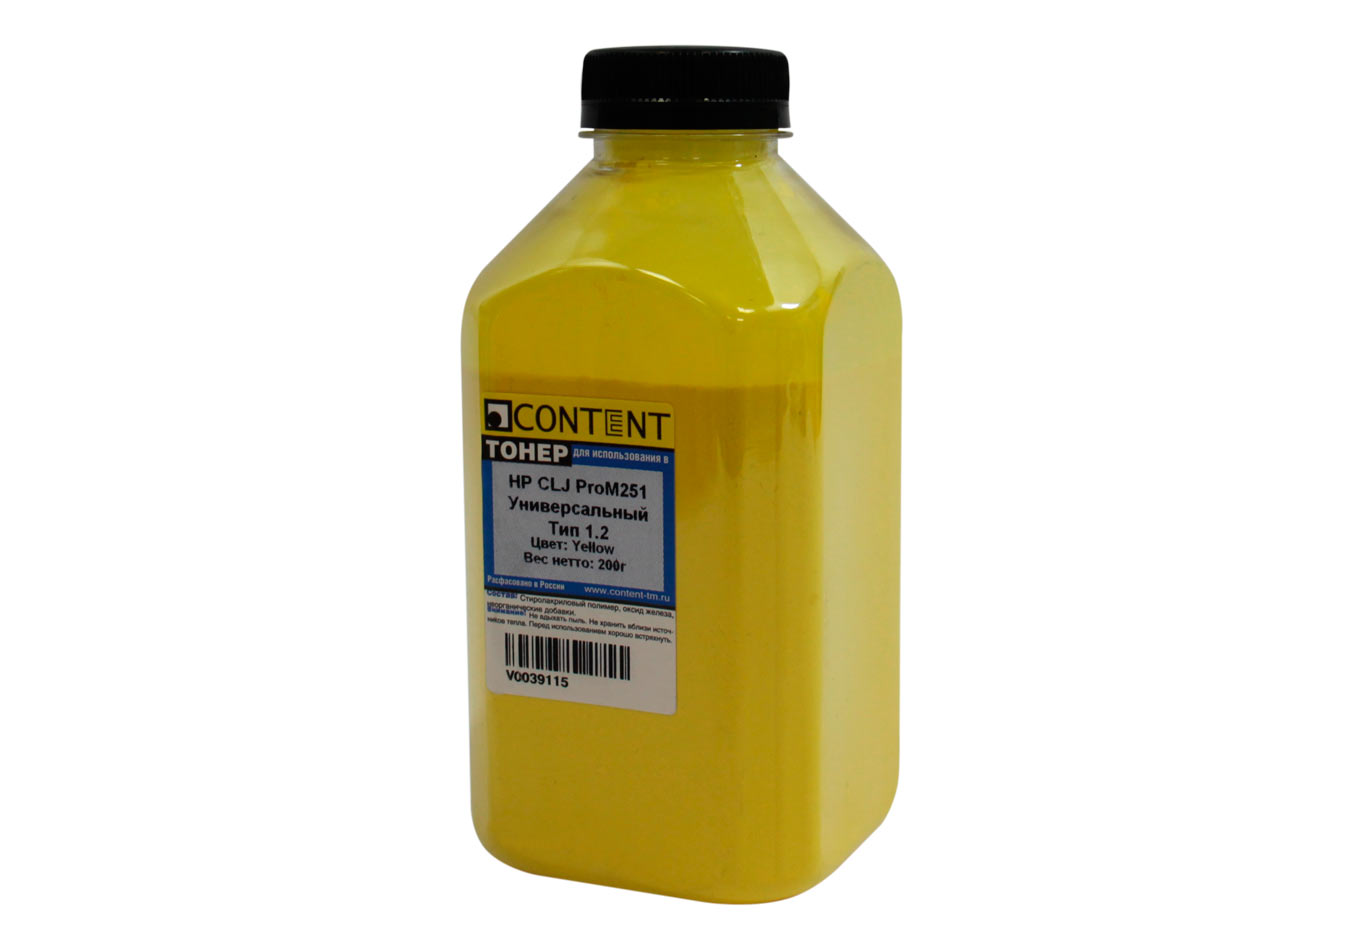 Тонер Content Тип 1.2, бутыль 200 г, желтый, совместимый для CLJ Pro M251, универсальный (V0039115)